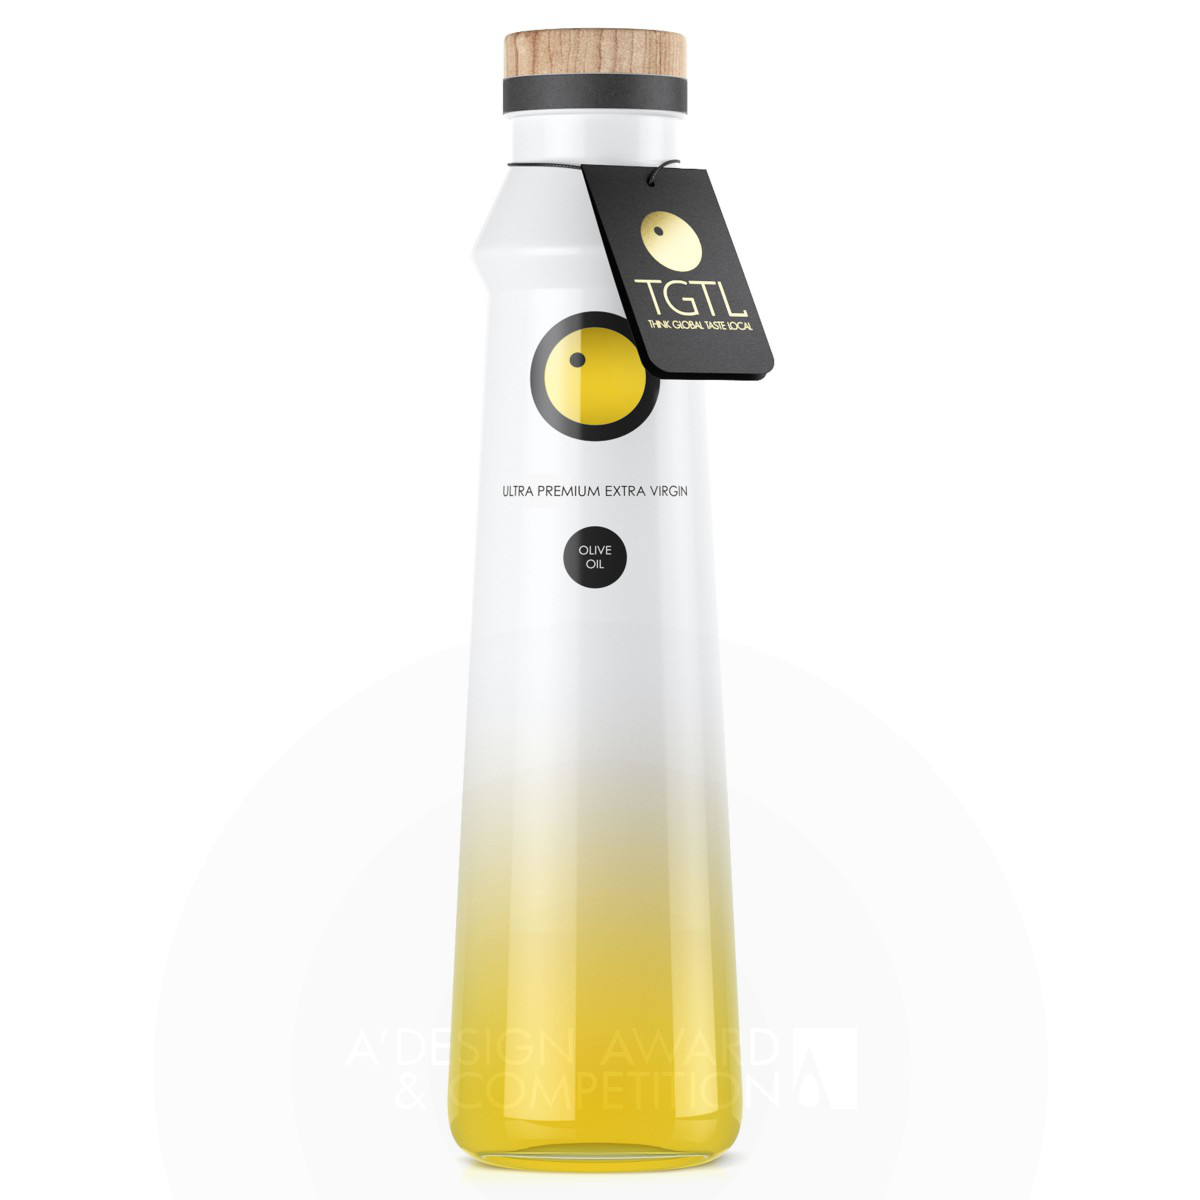 TGTL - EXTRA VIRGIN OLIVE OIL BOTTLE Olive oil bottle by Guilherme Jardim